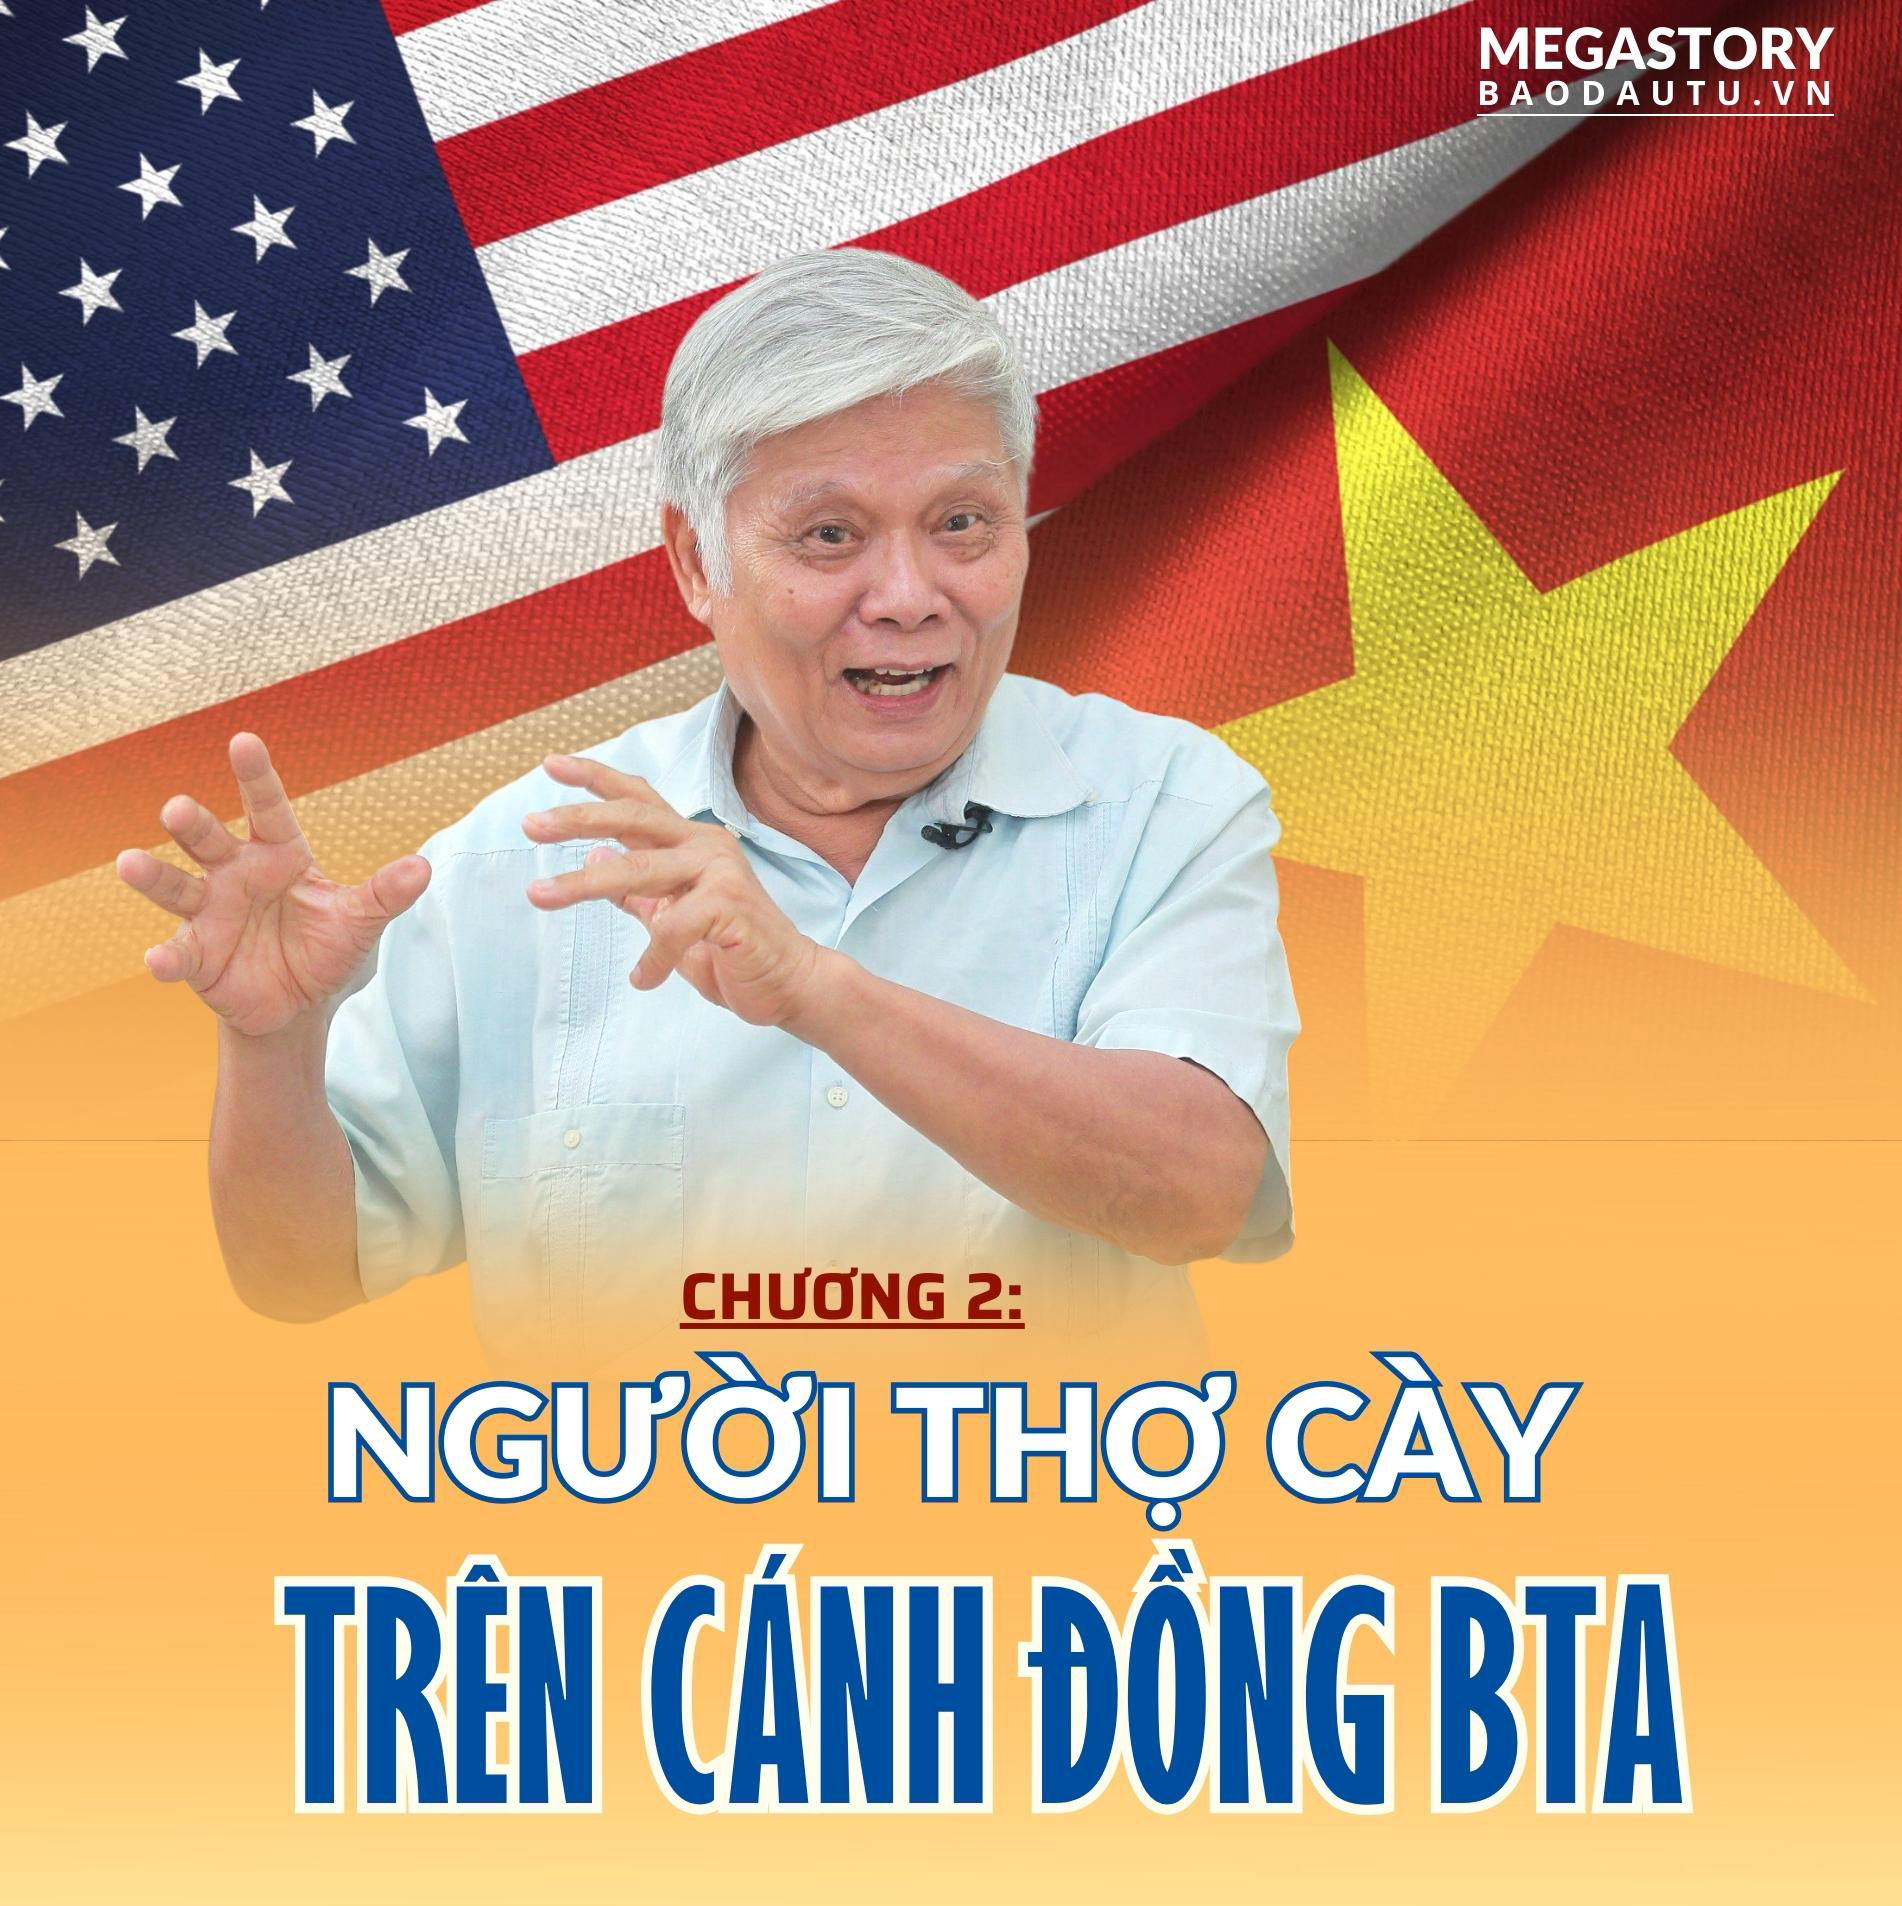 Nhà đàm phán Nguyễn Đình Lương: Tác động của Hiệp định thương mại Việt Nam - Hoa Kỳ là cực kỳ to lớn: Chương 2 - Người thợ cày trên cánh đồng BTA